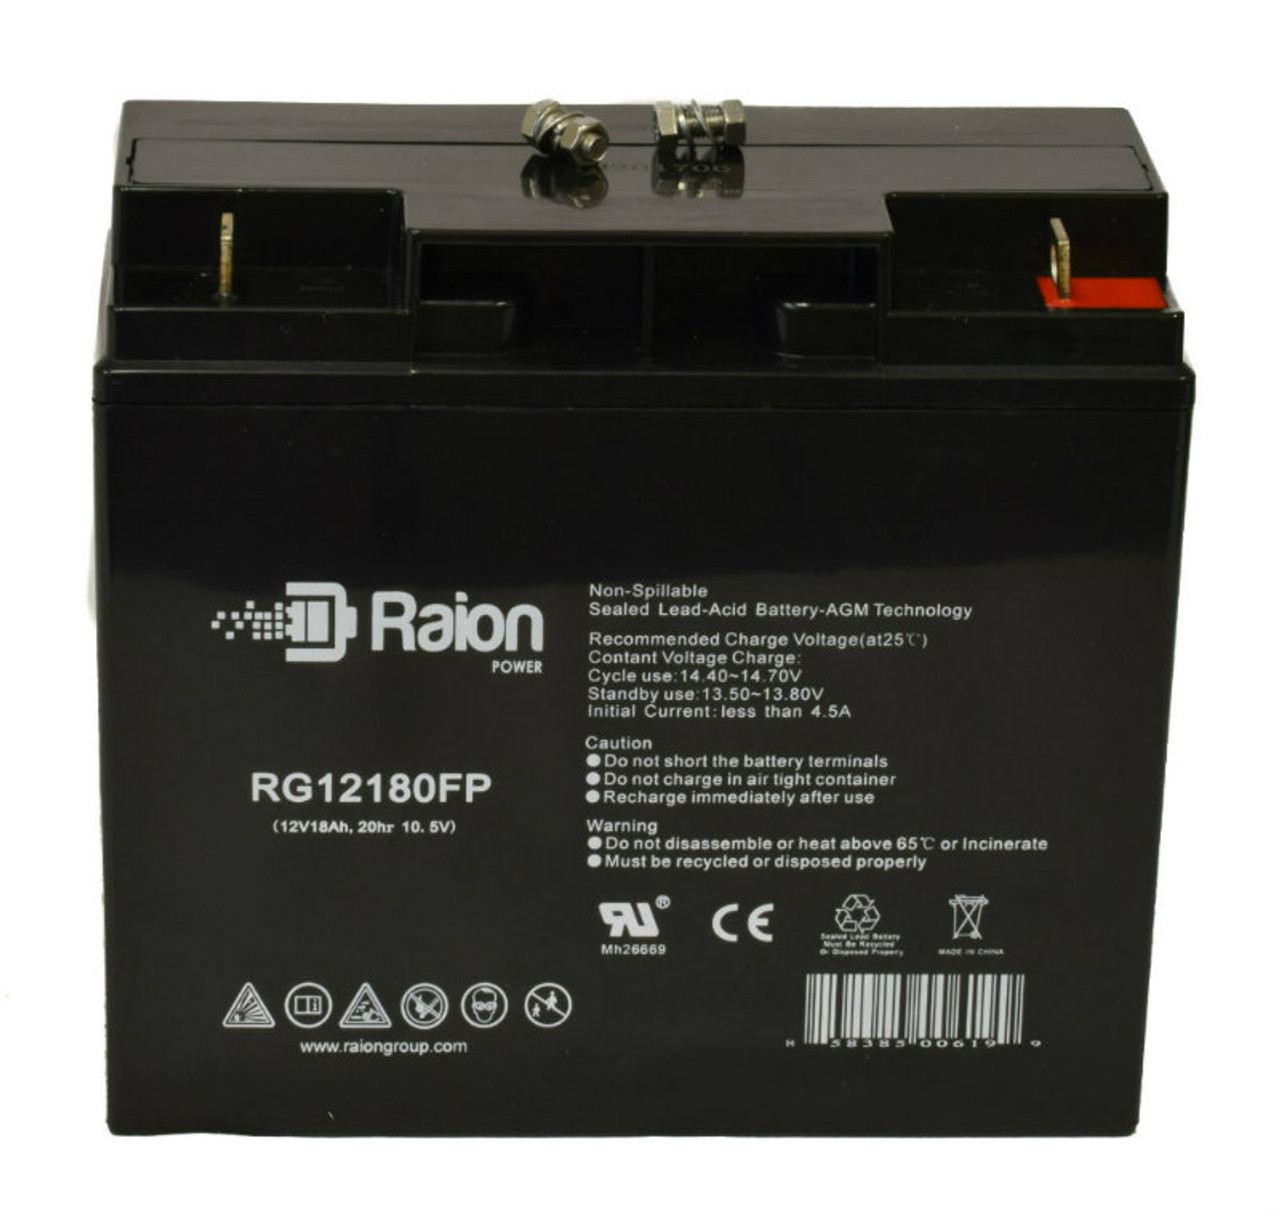 Raion Power RG12180FP 12V 18Ah Lead Acid Battery for Ecolo Bocca